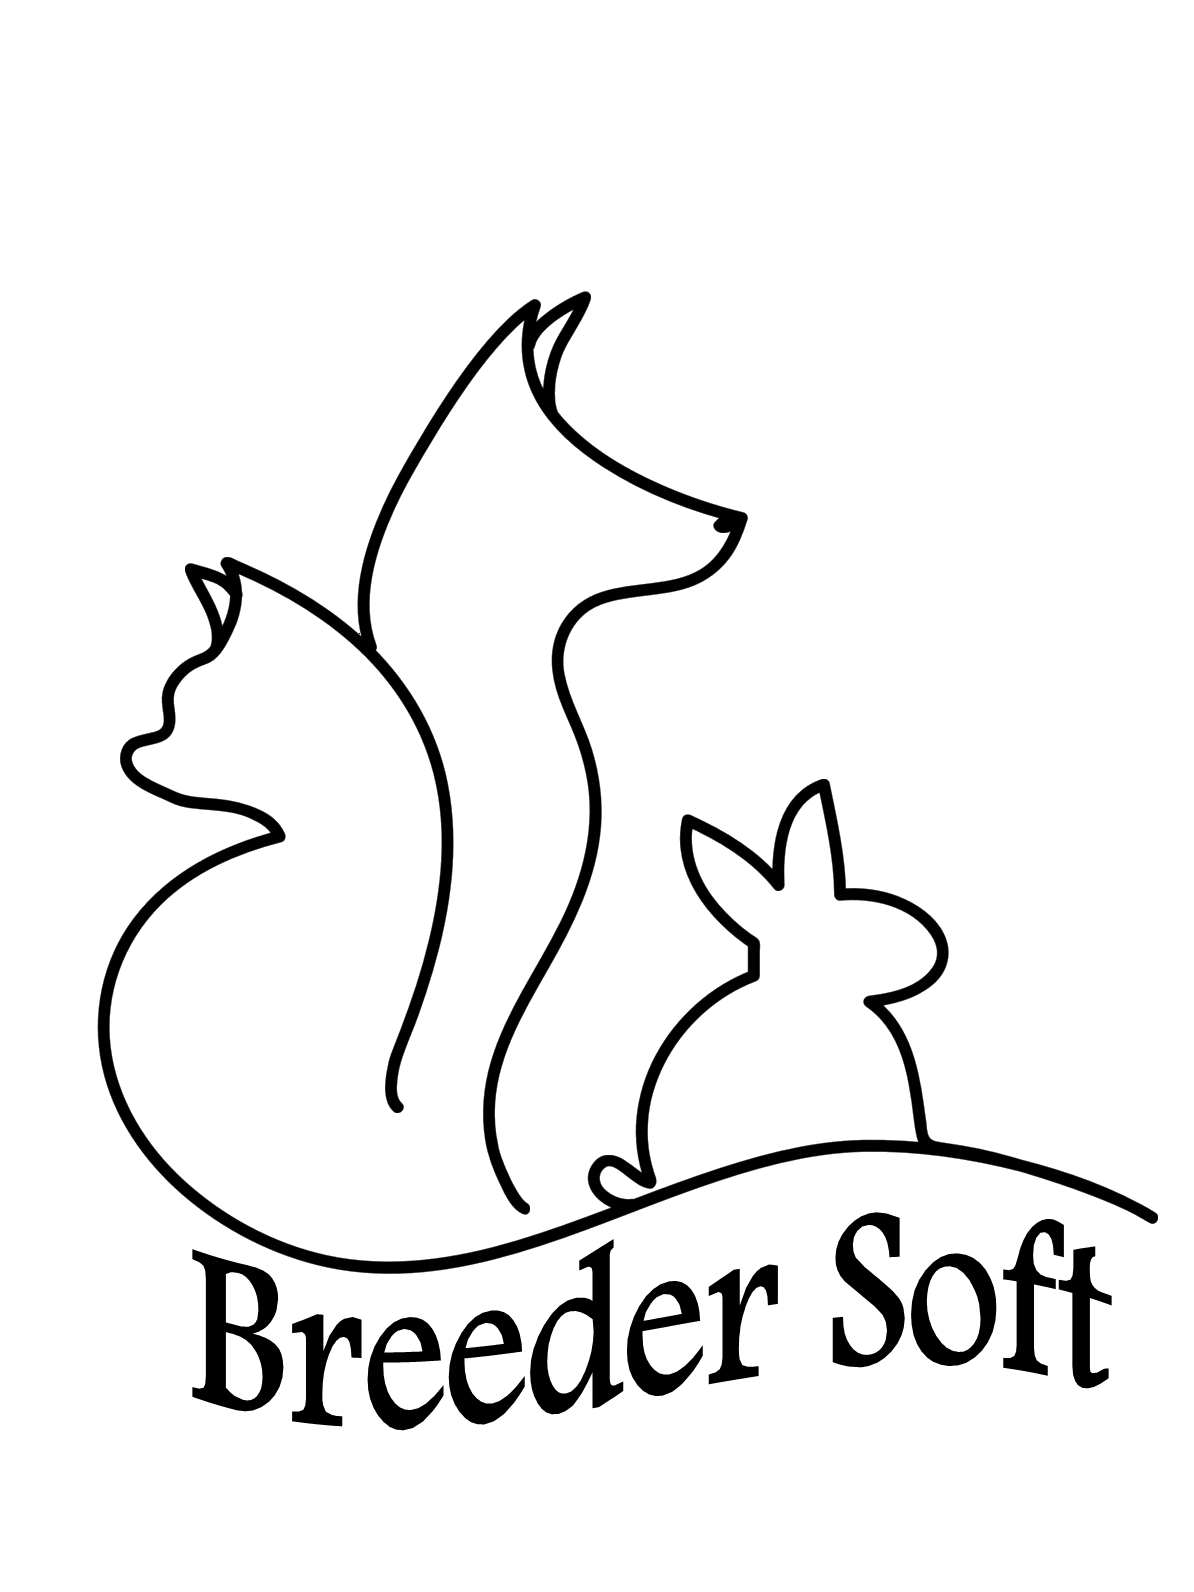 Breeder Soft